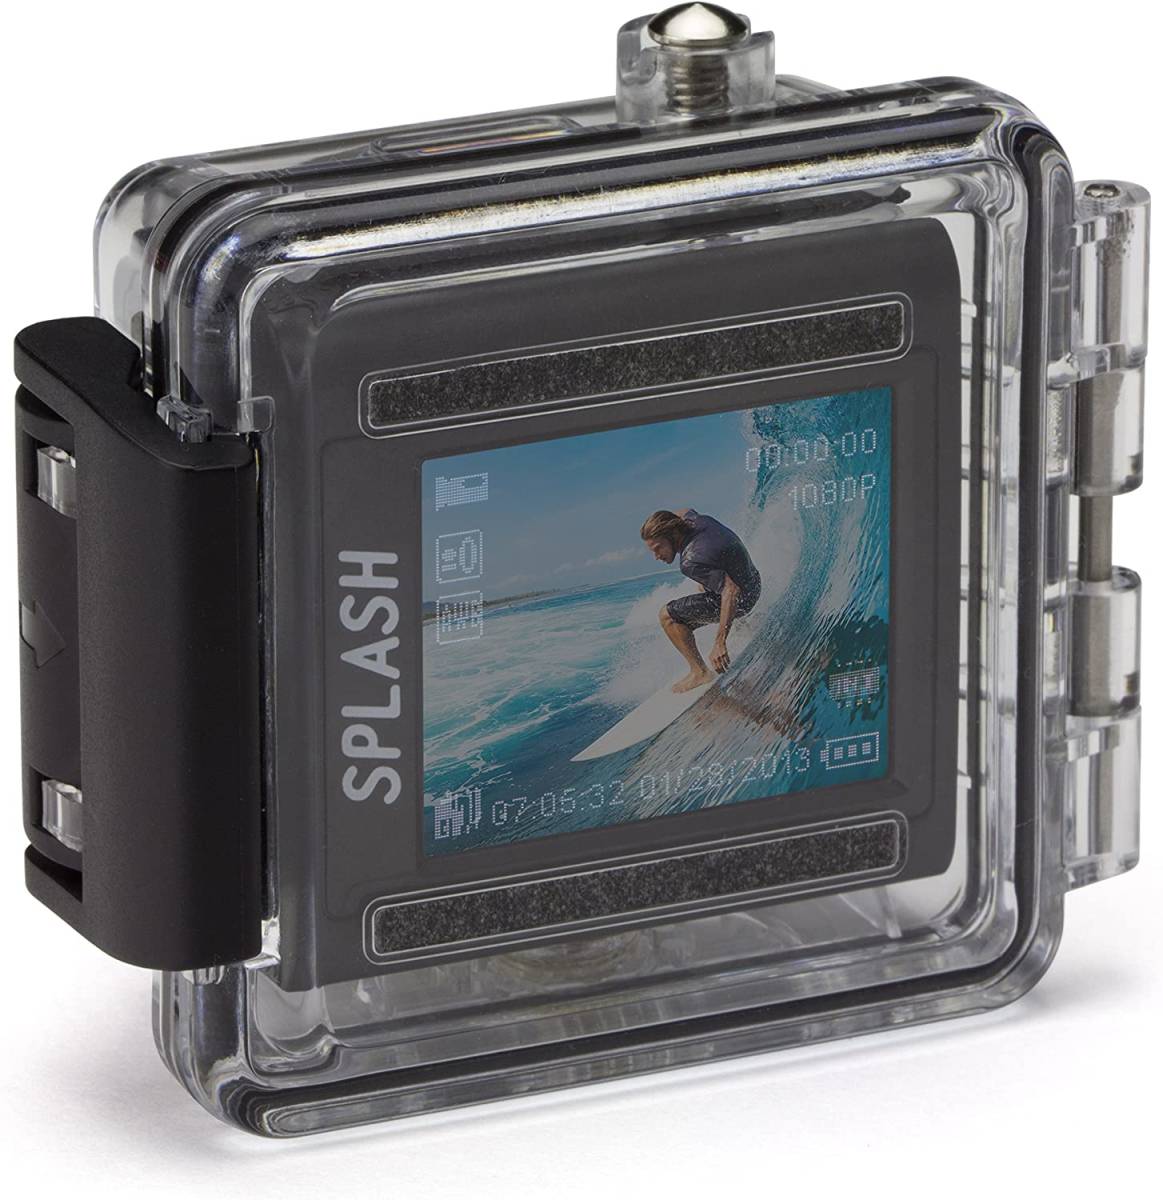 未開封品 Kitvision キットビジョン Splash 防水 アクションカメラ Full HD 1080p マウント&防水ダイビングケース付き ブラック KVSPLASHBK_画像6